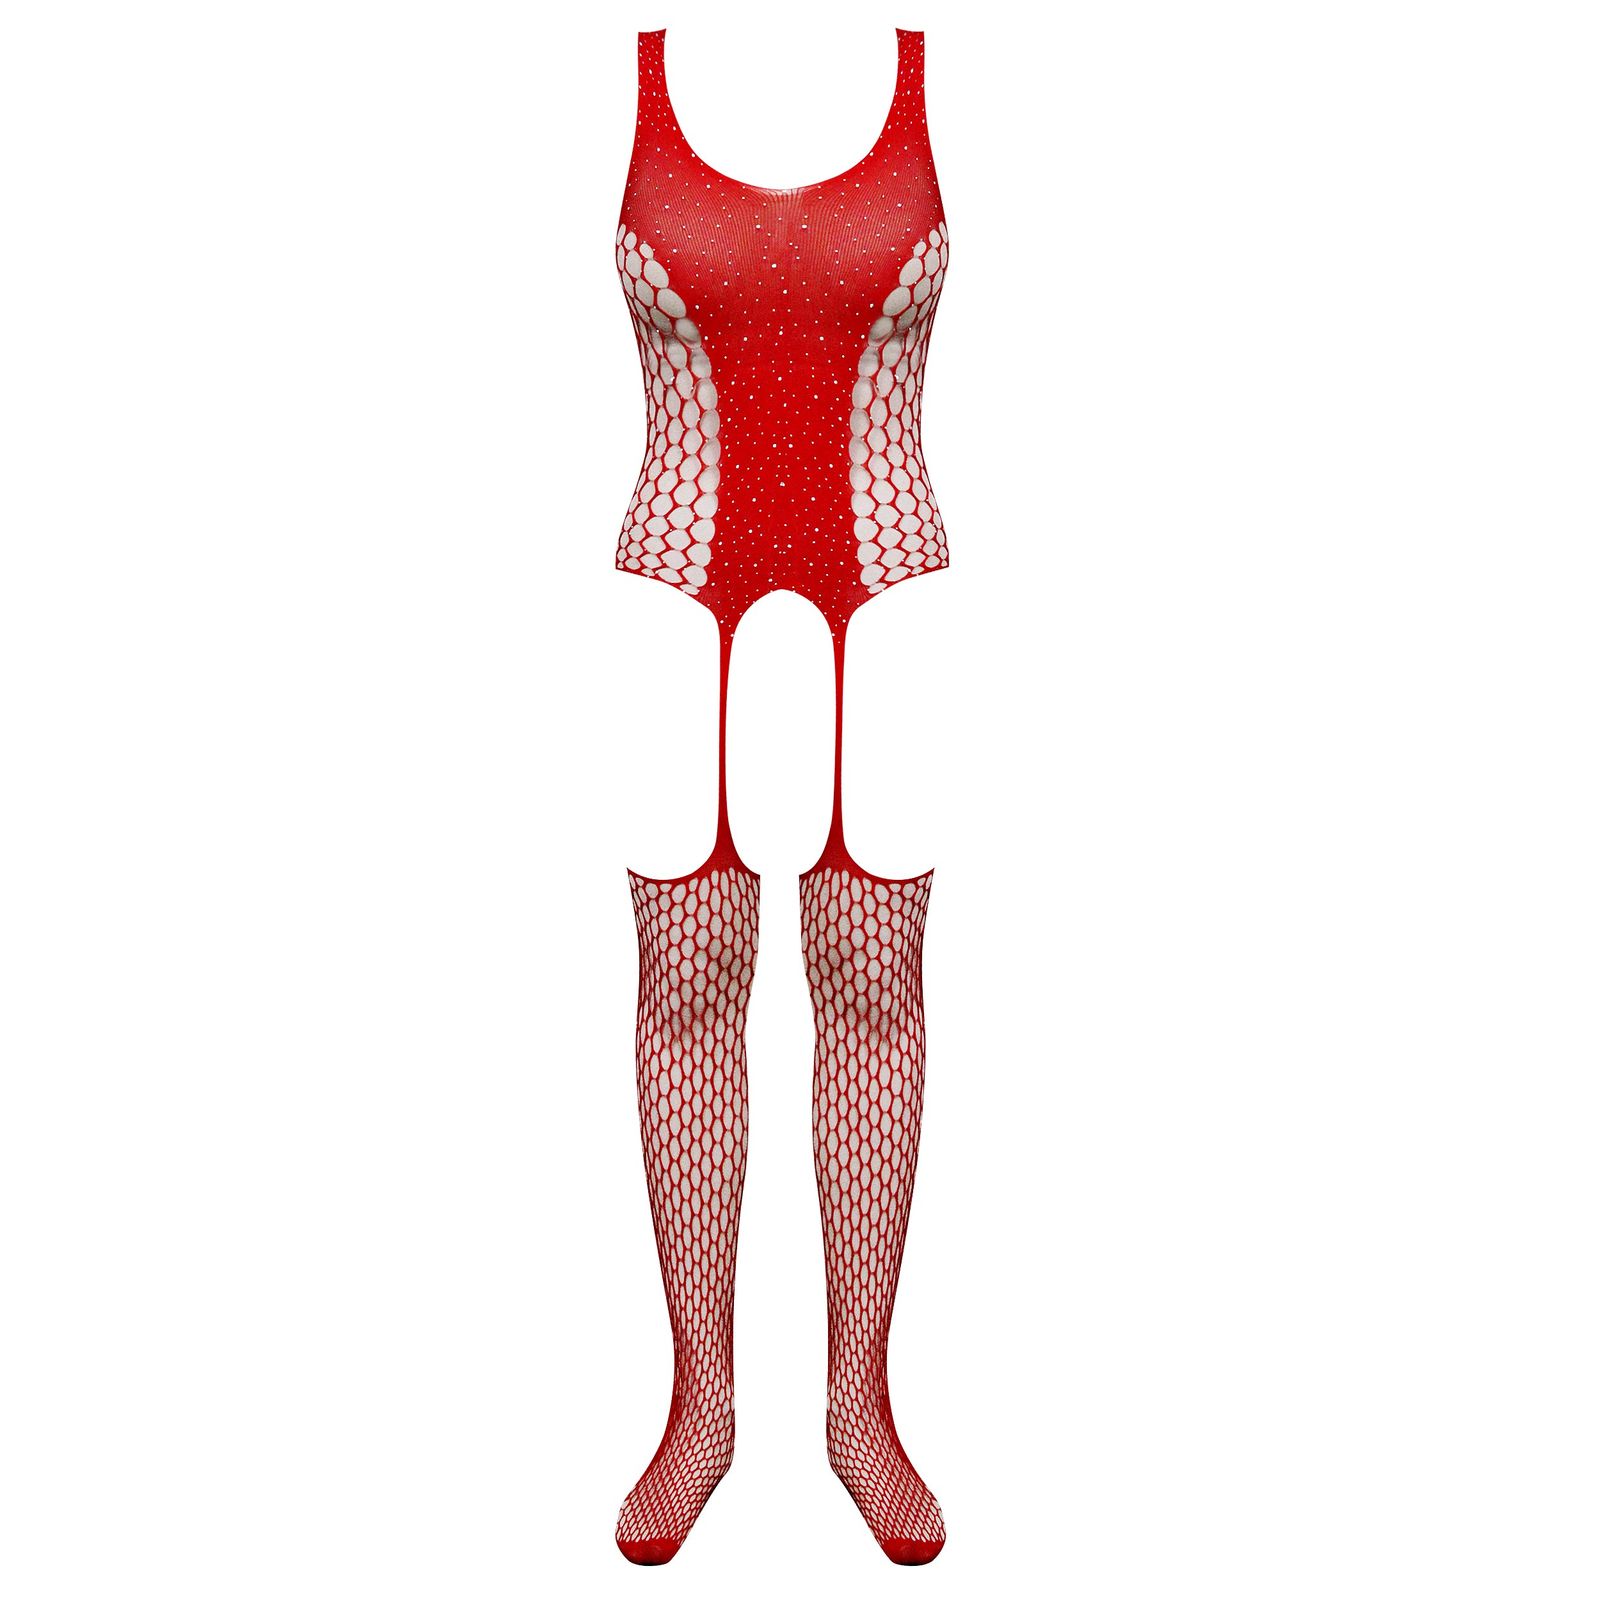 لباس خواب زنانه ماییلدا مدل نگین دار فانتزی کد 4860-7017 رنگ قرمز -  - 2